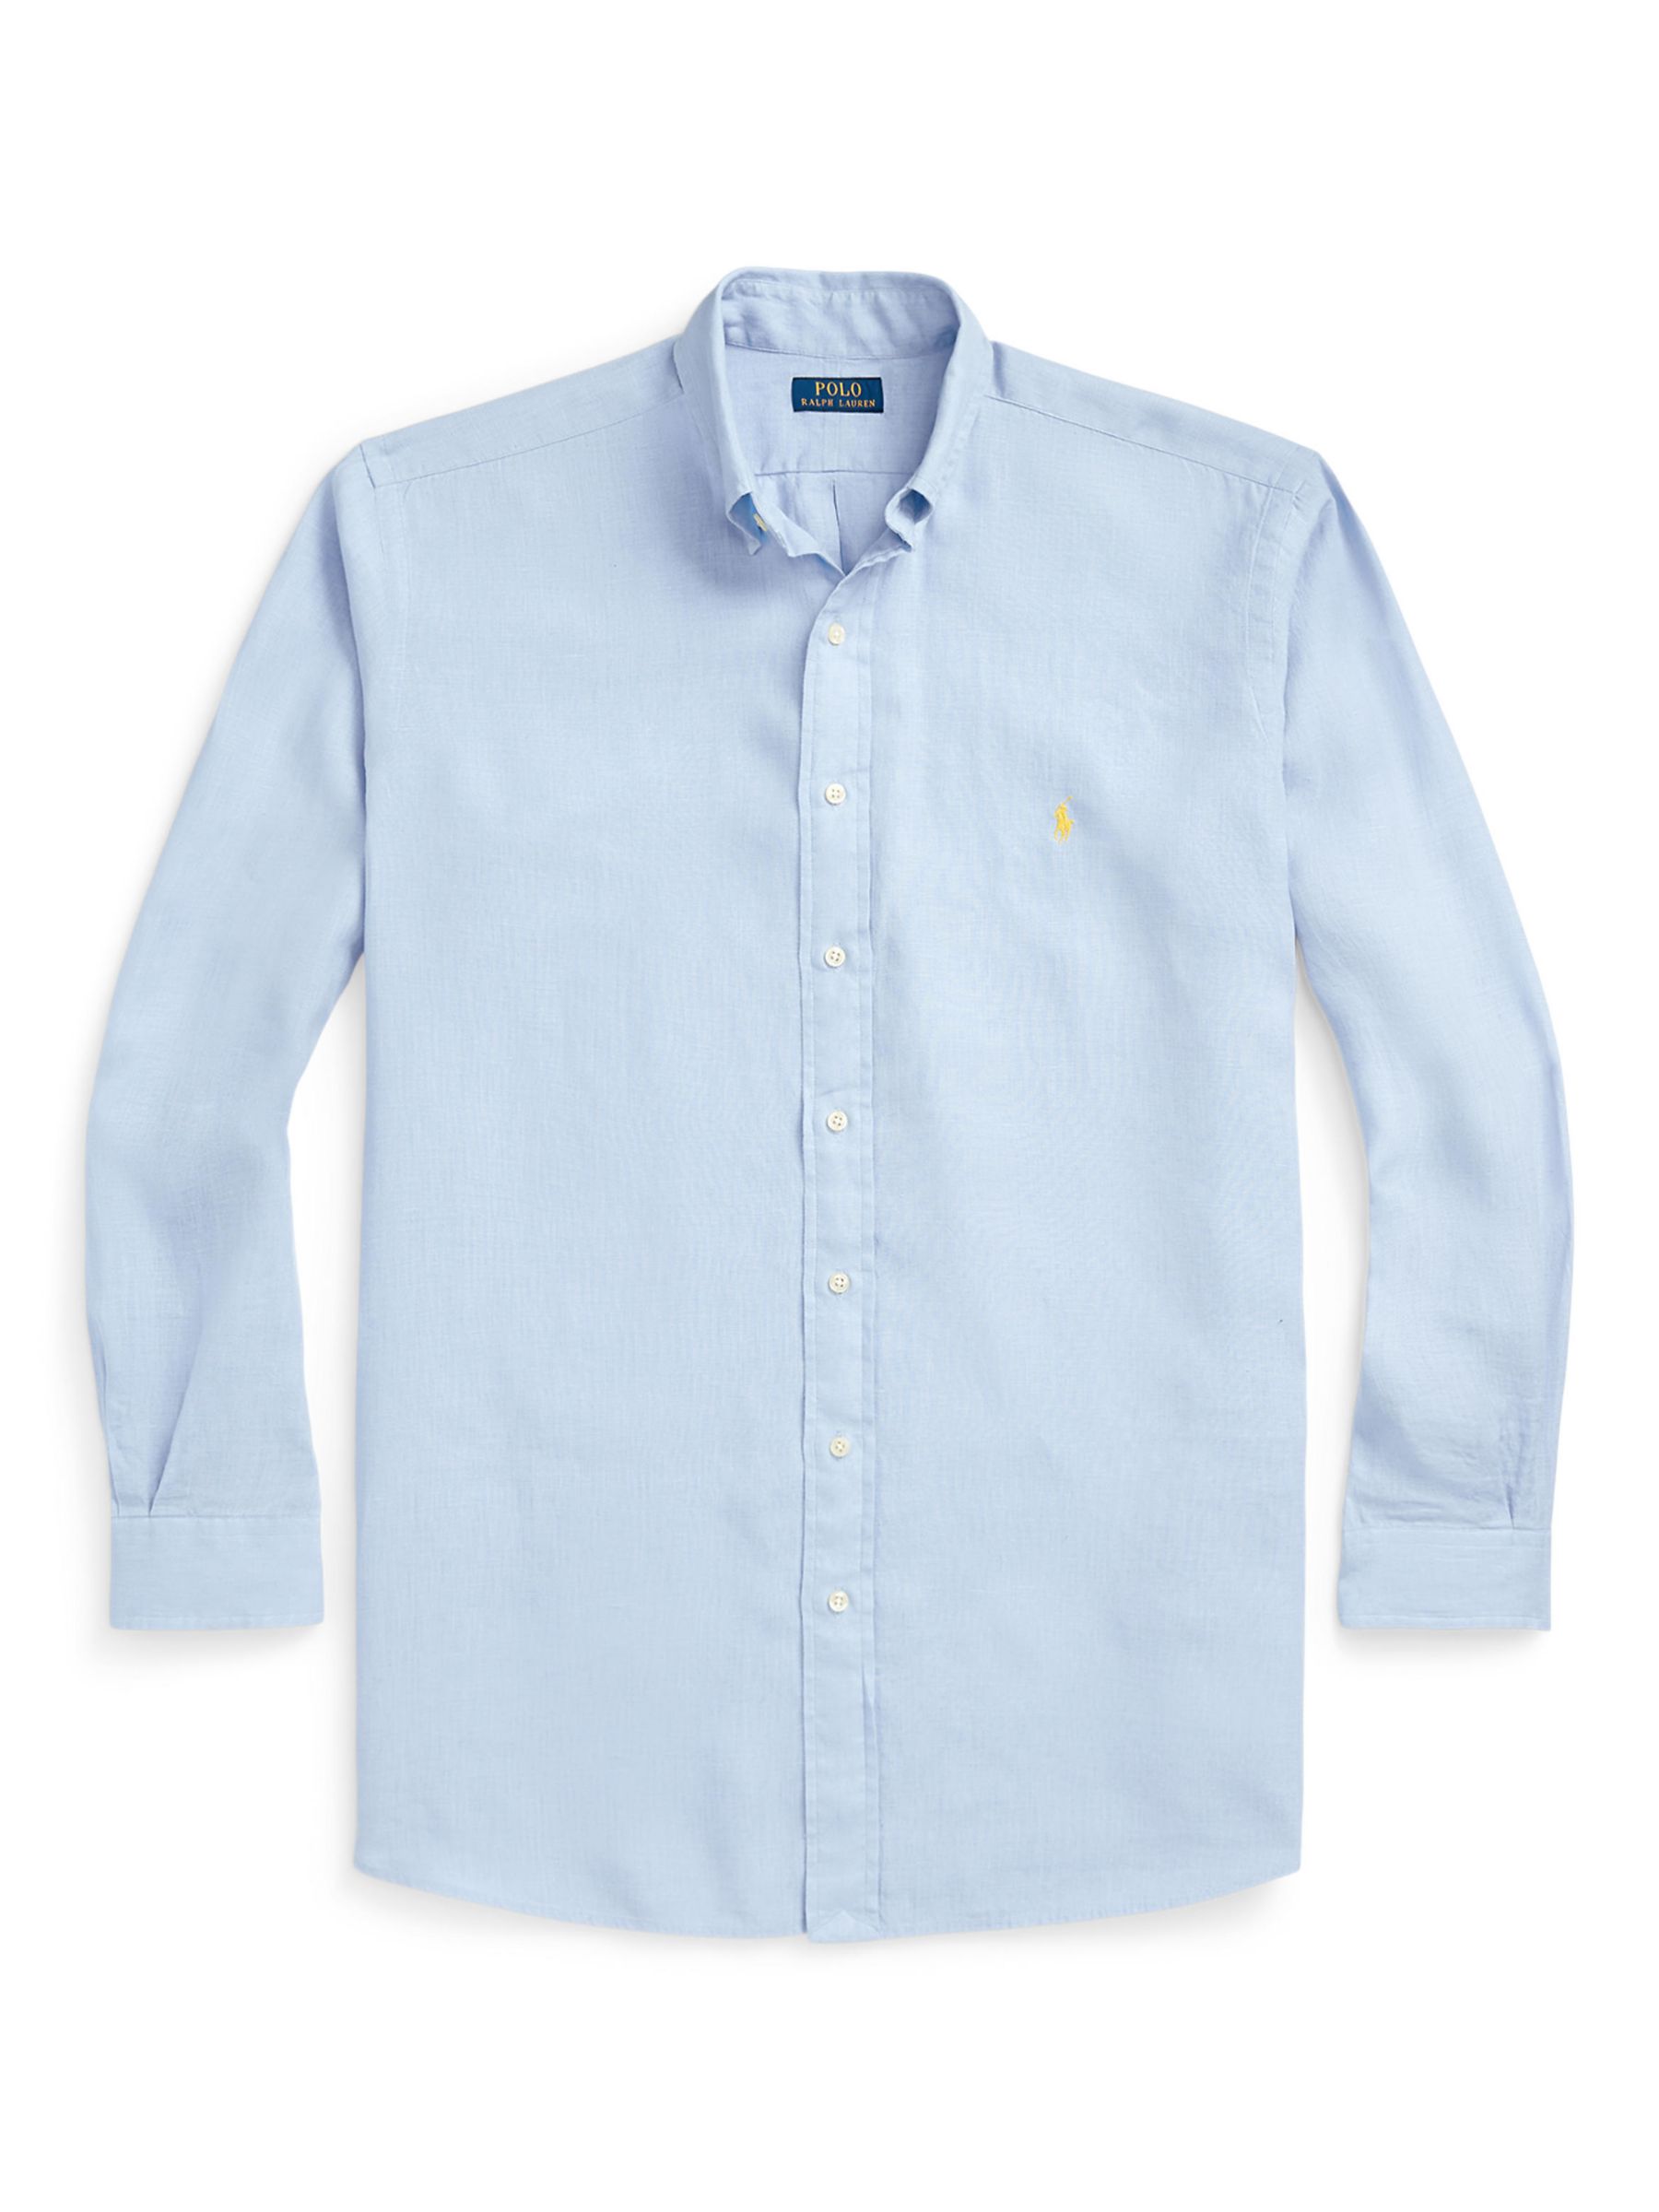 Buy Polo Ralph Lauren Big & Tall Lightweight Linen Shirt, Blue Hyacinth Online at johnlewis.com